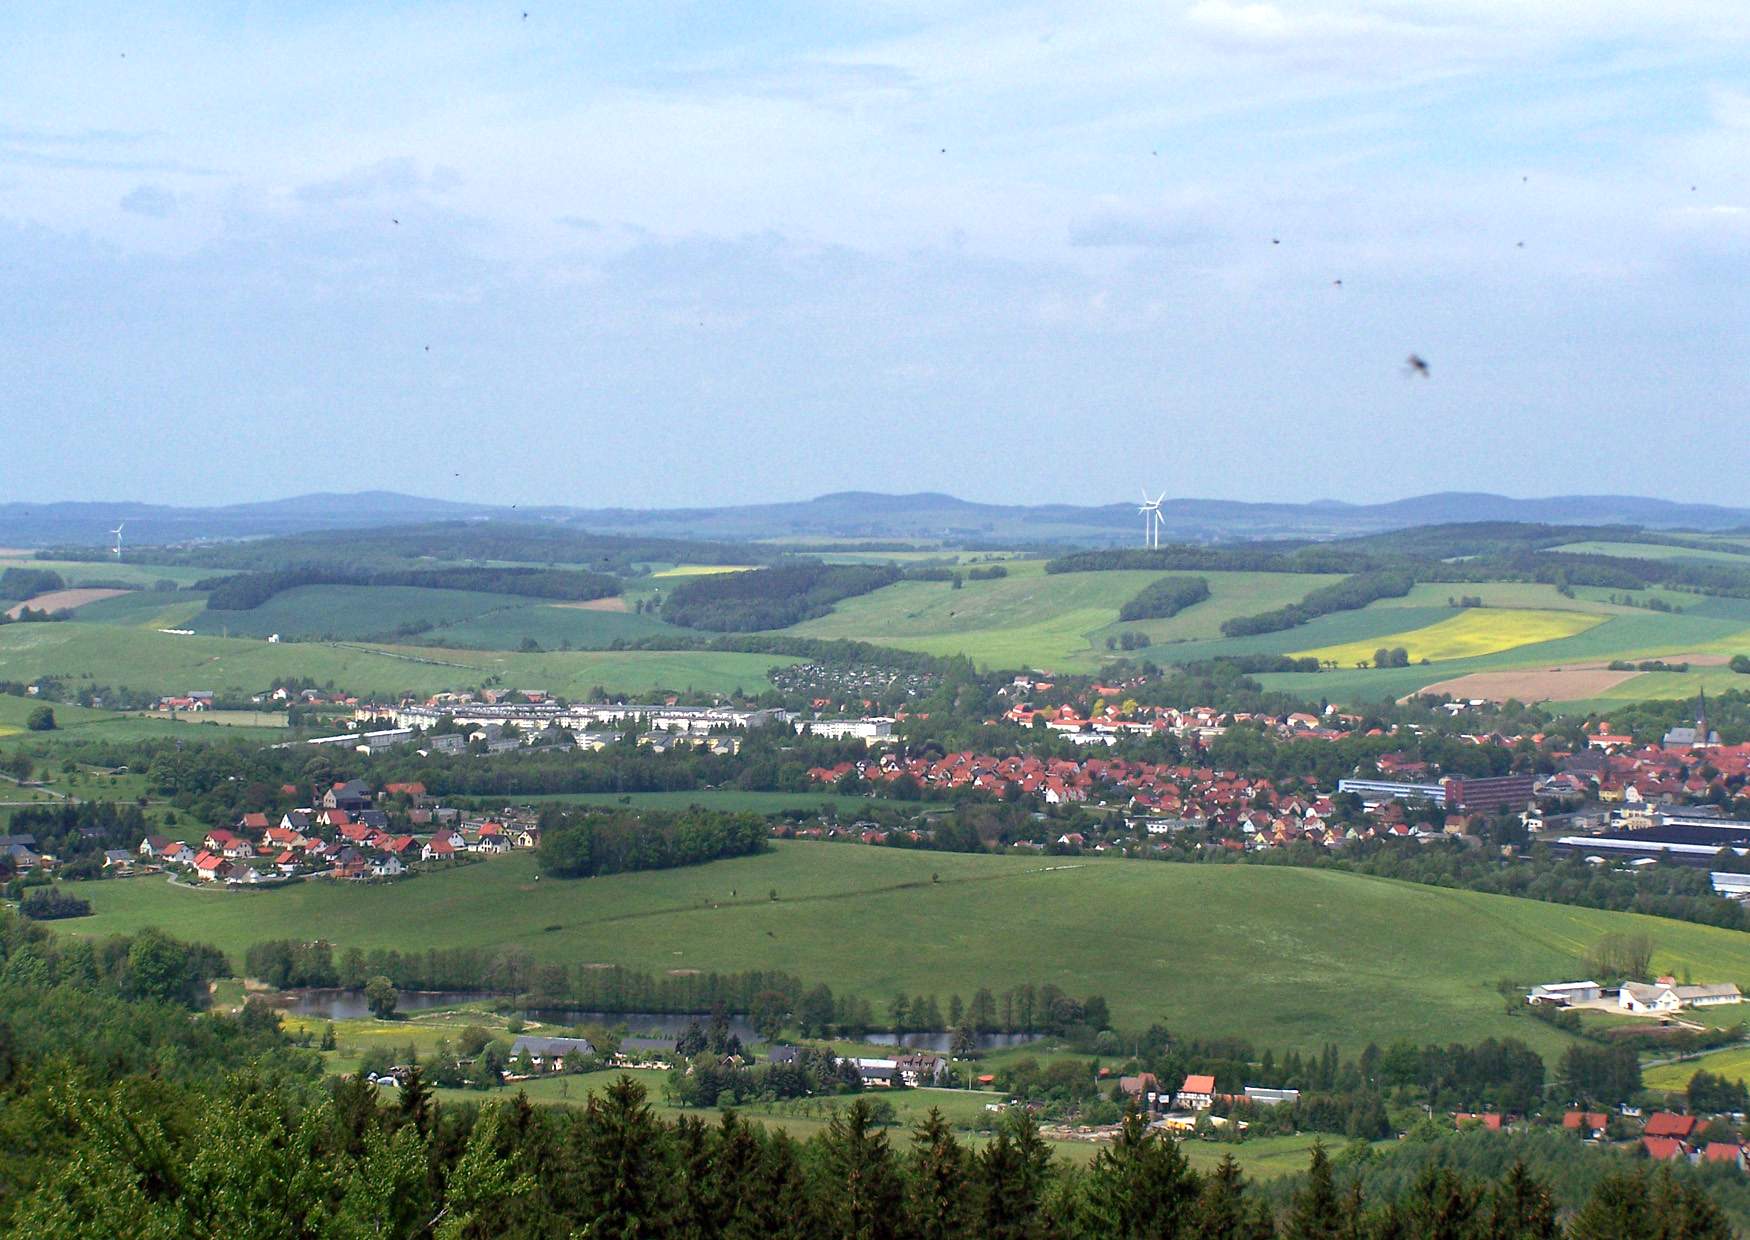 Der Blick vom Aussichtsturm auf dem Ungerberg auf die Stadt Neustadt in Sachsen